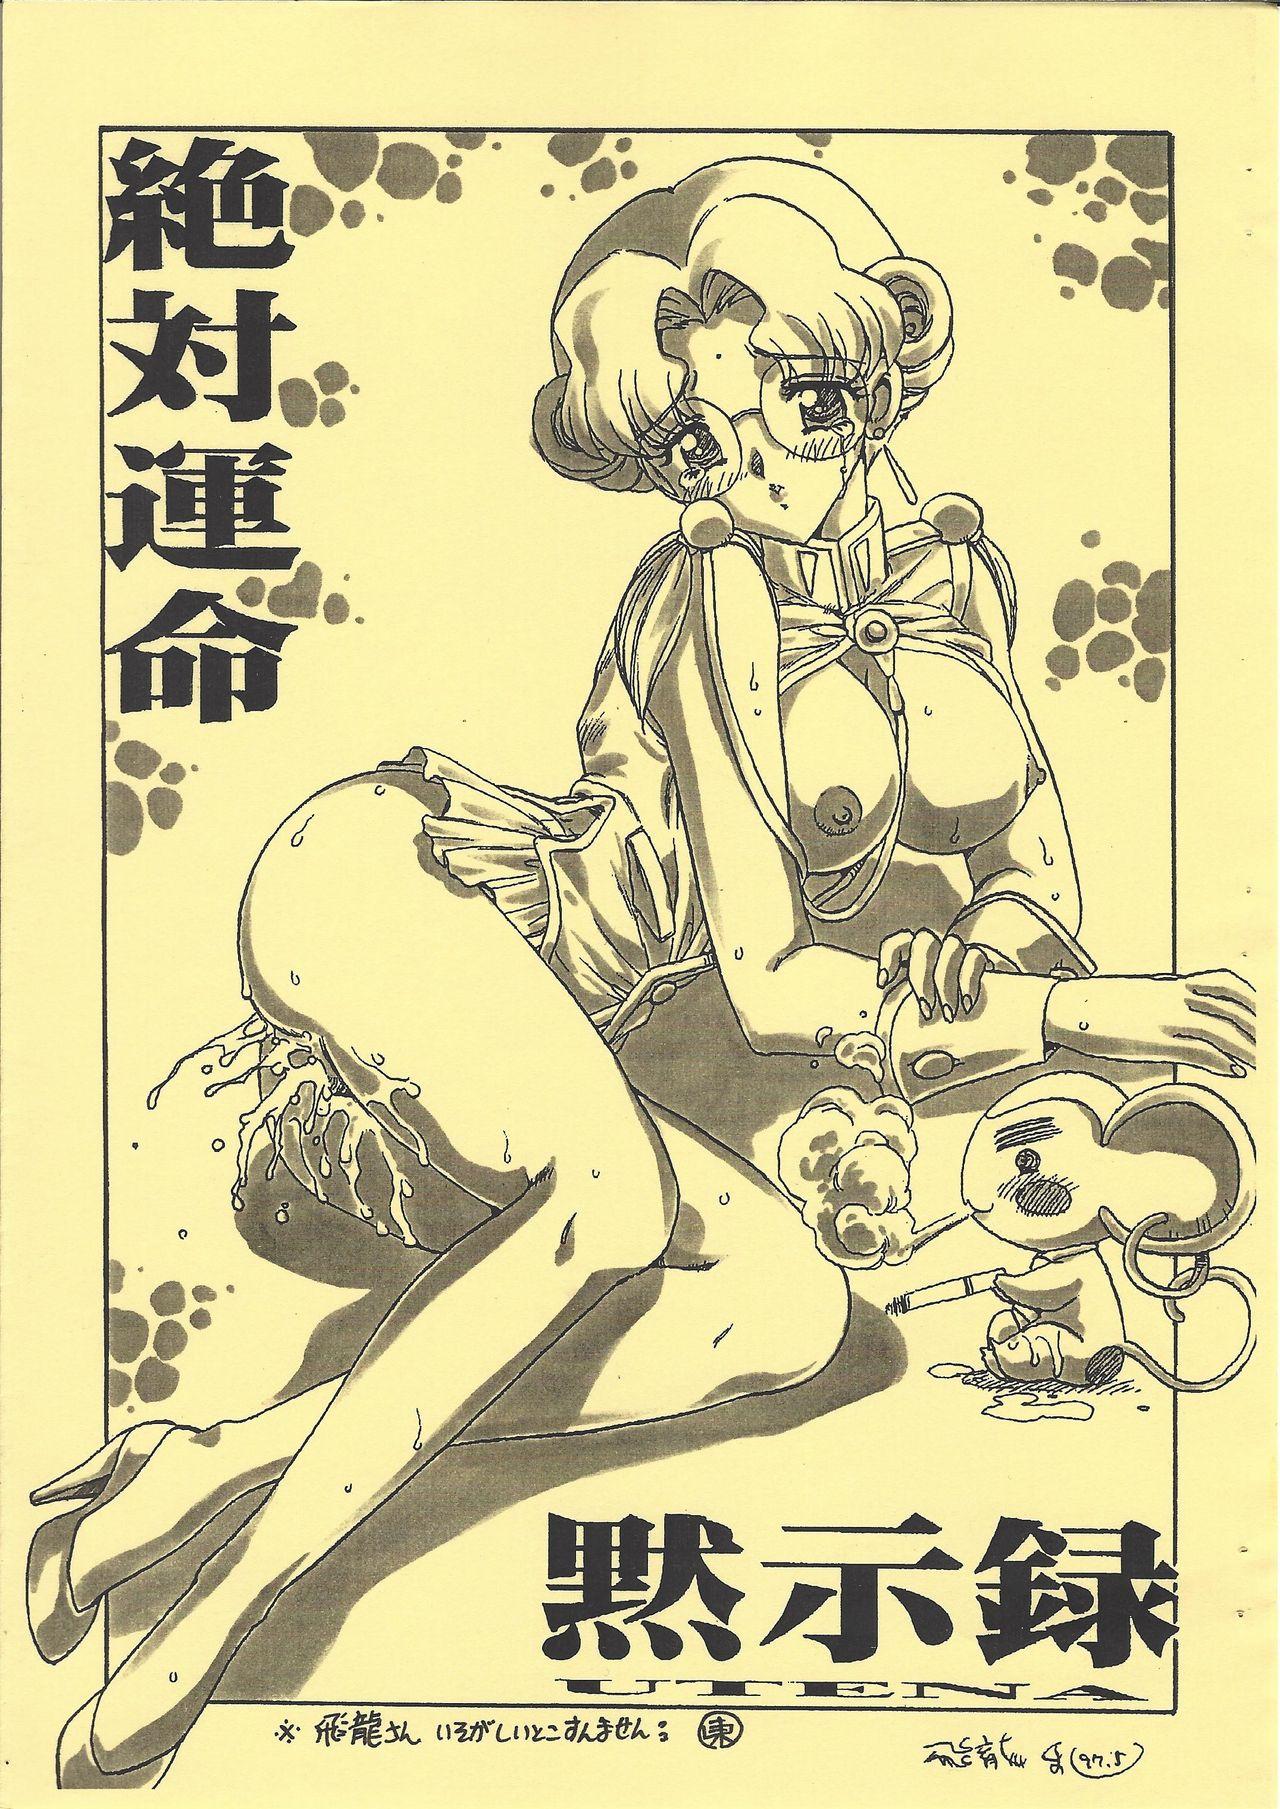 Gay Brownhair Shinpi no Sekai Taisen - El hazard Sakura taisen | sakura wars Revolutionary girl utena | shoujo kakumei utena Sex Toy - Page 3